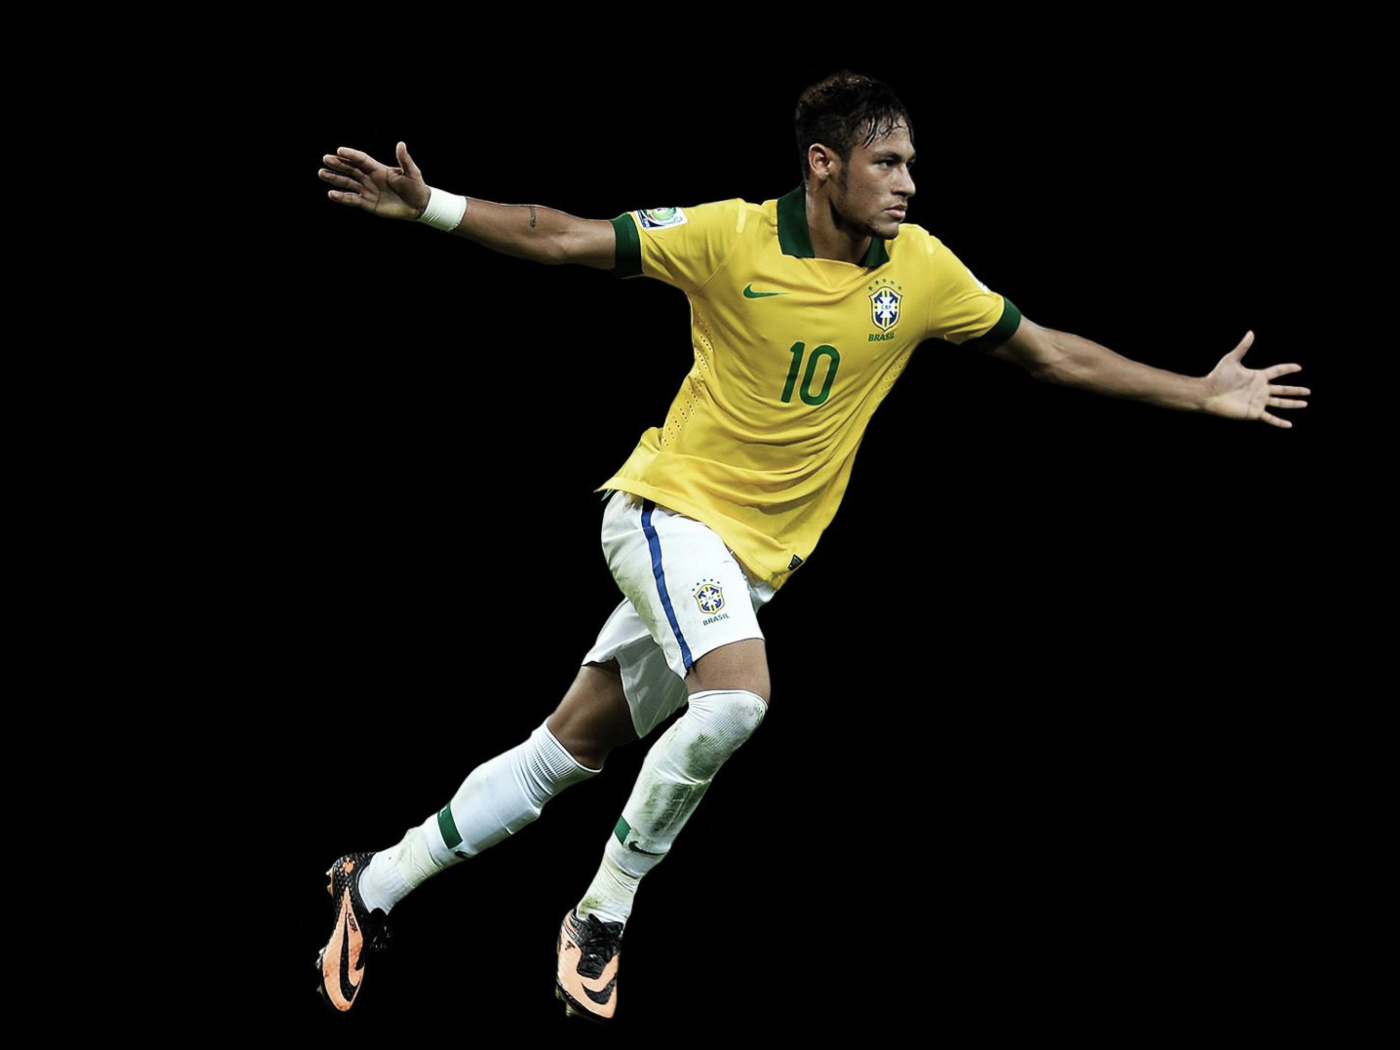 Neymar Brazil Football Player wallpaper 1400x1050